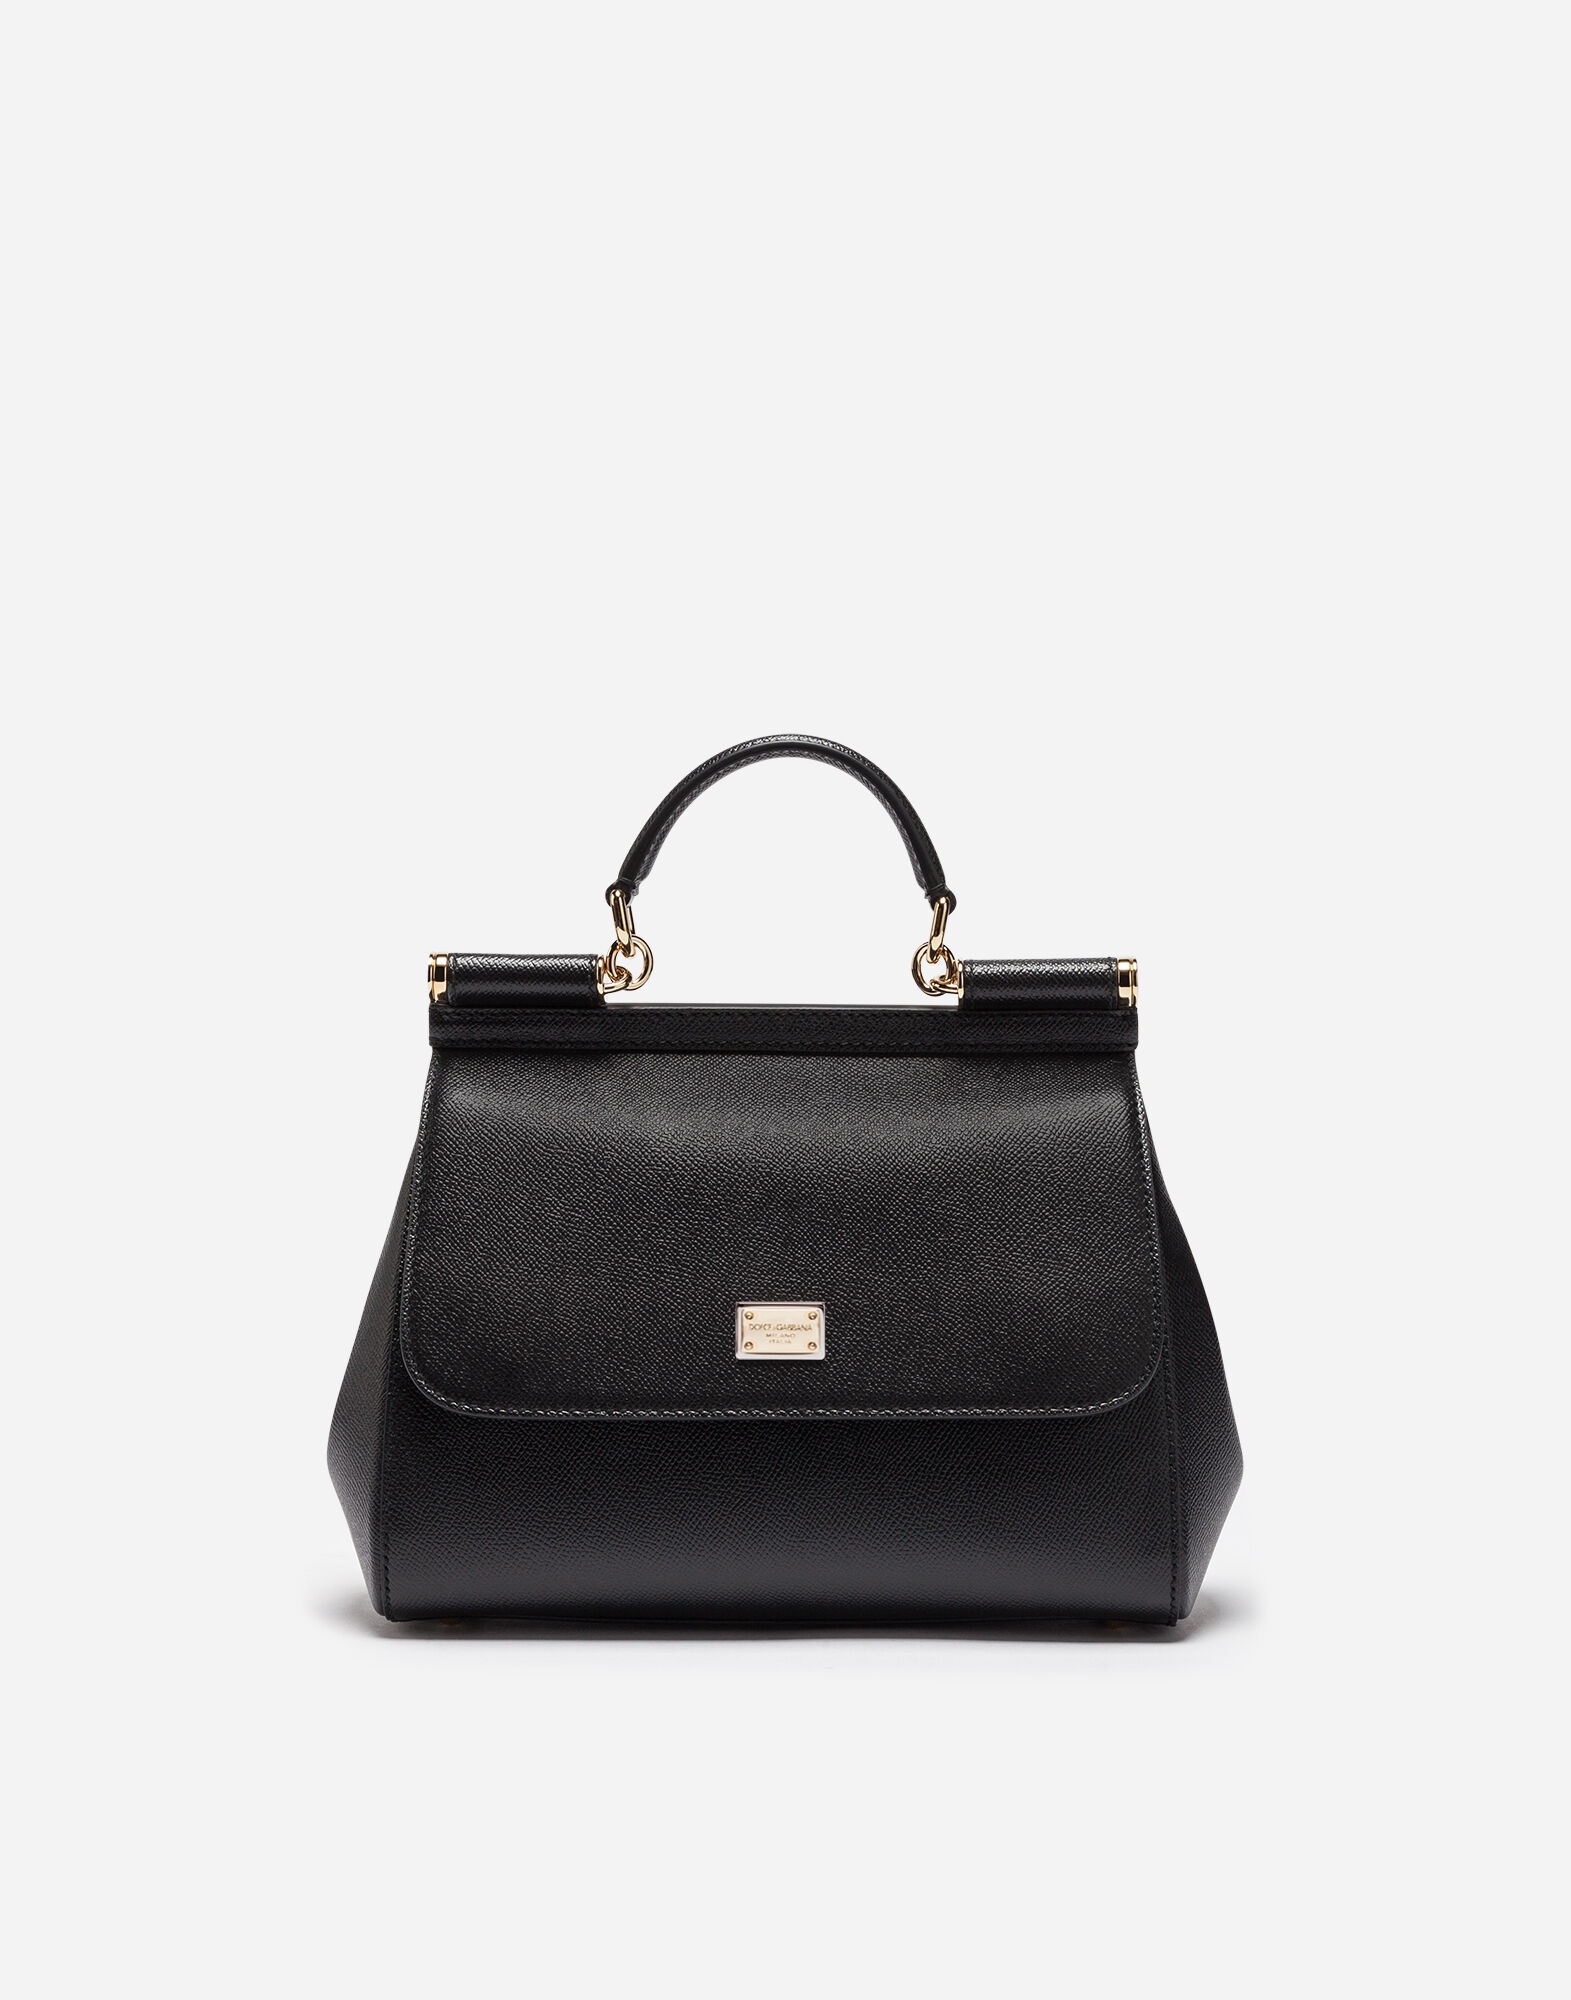 Medium Sicily handbag in dauphine leather - 1